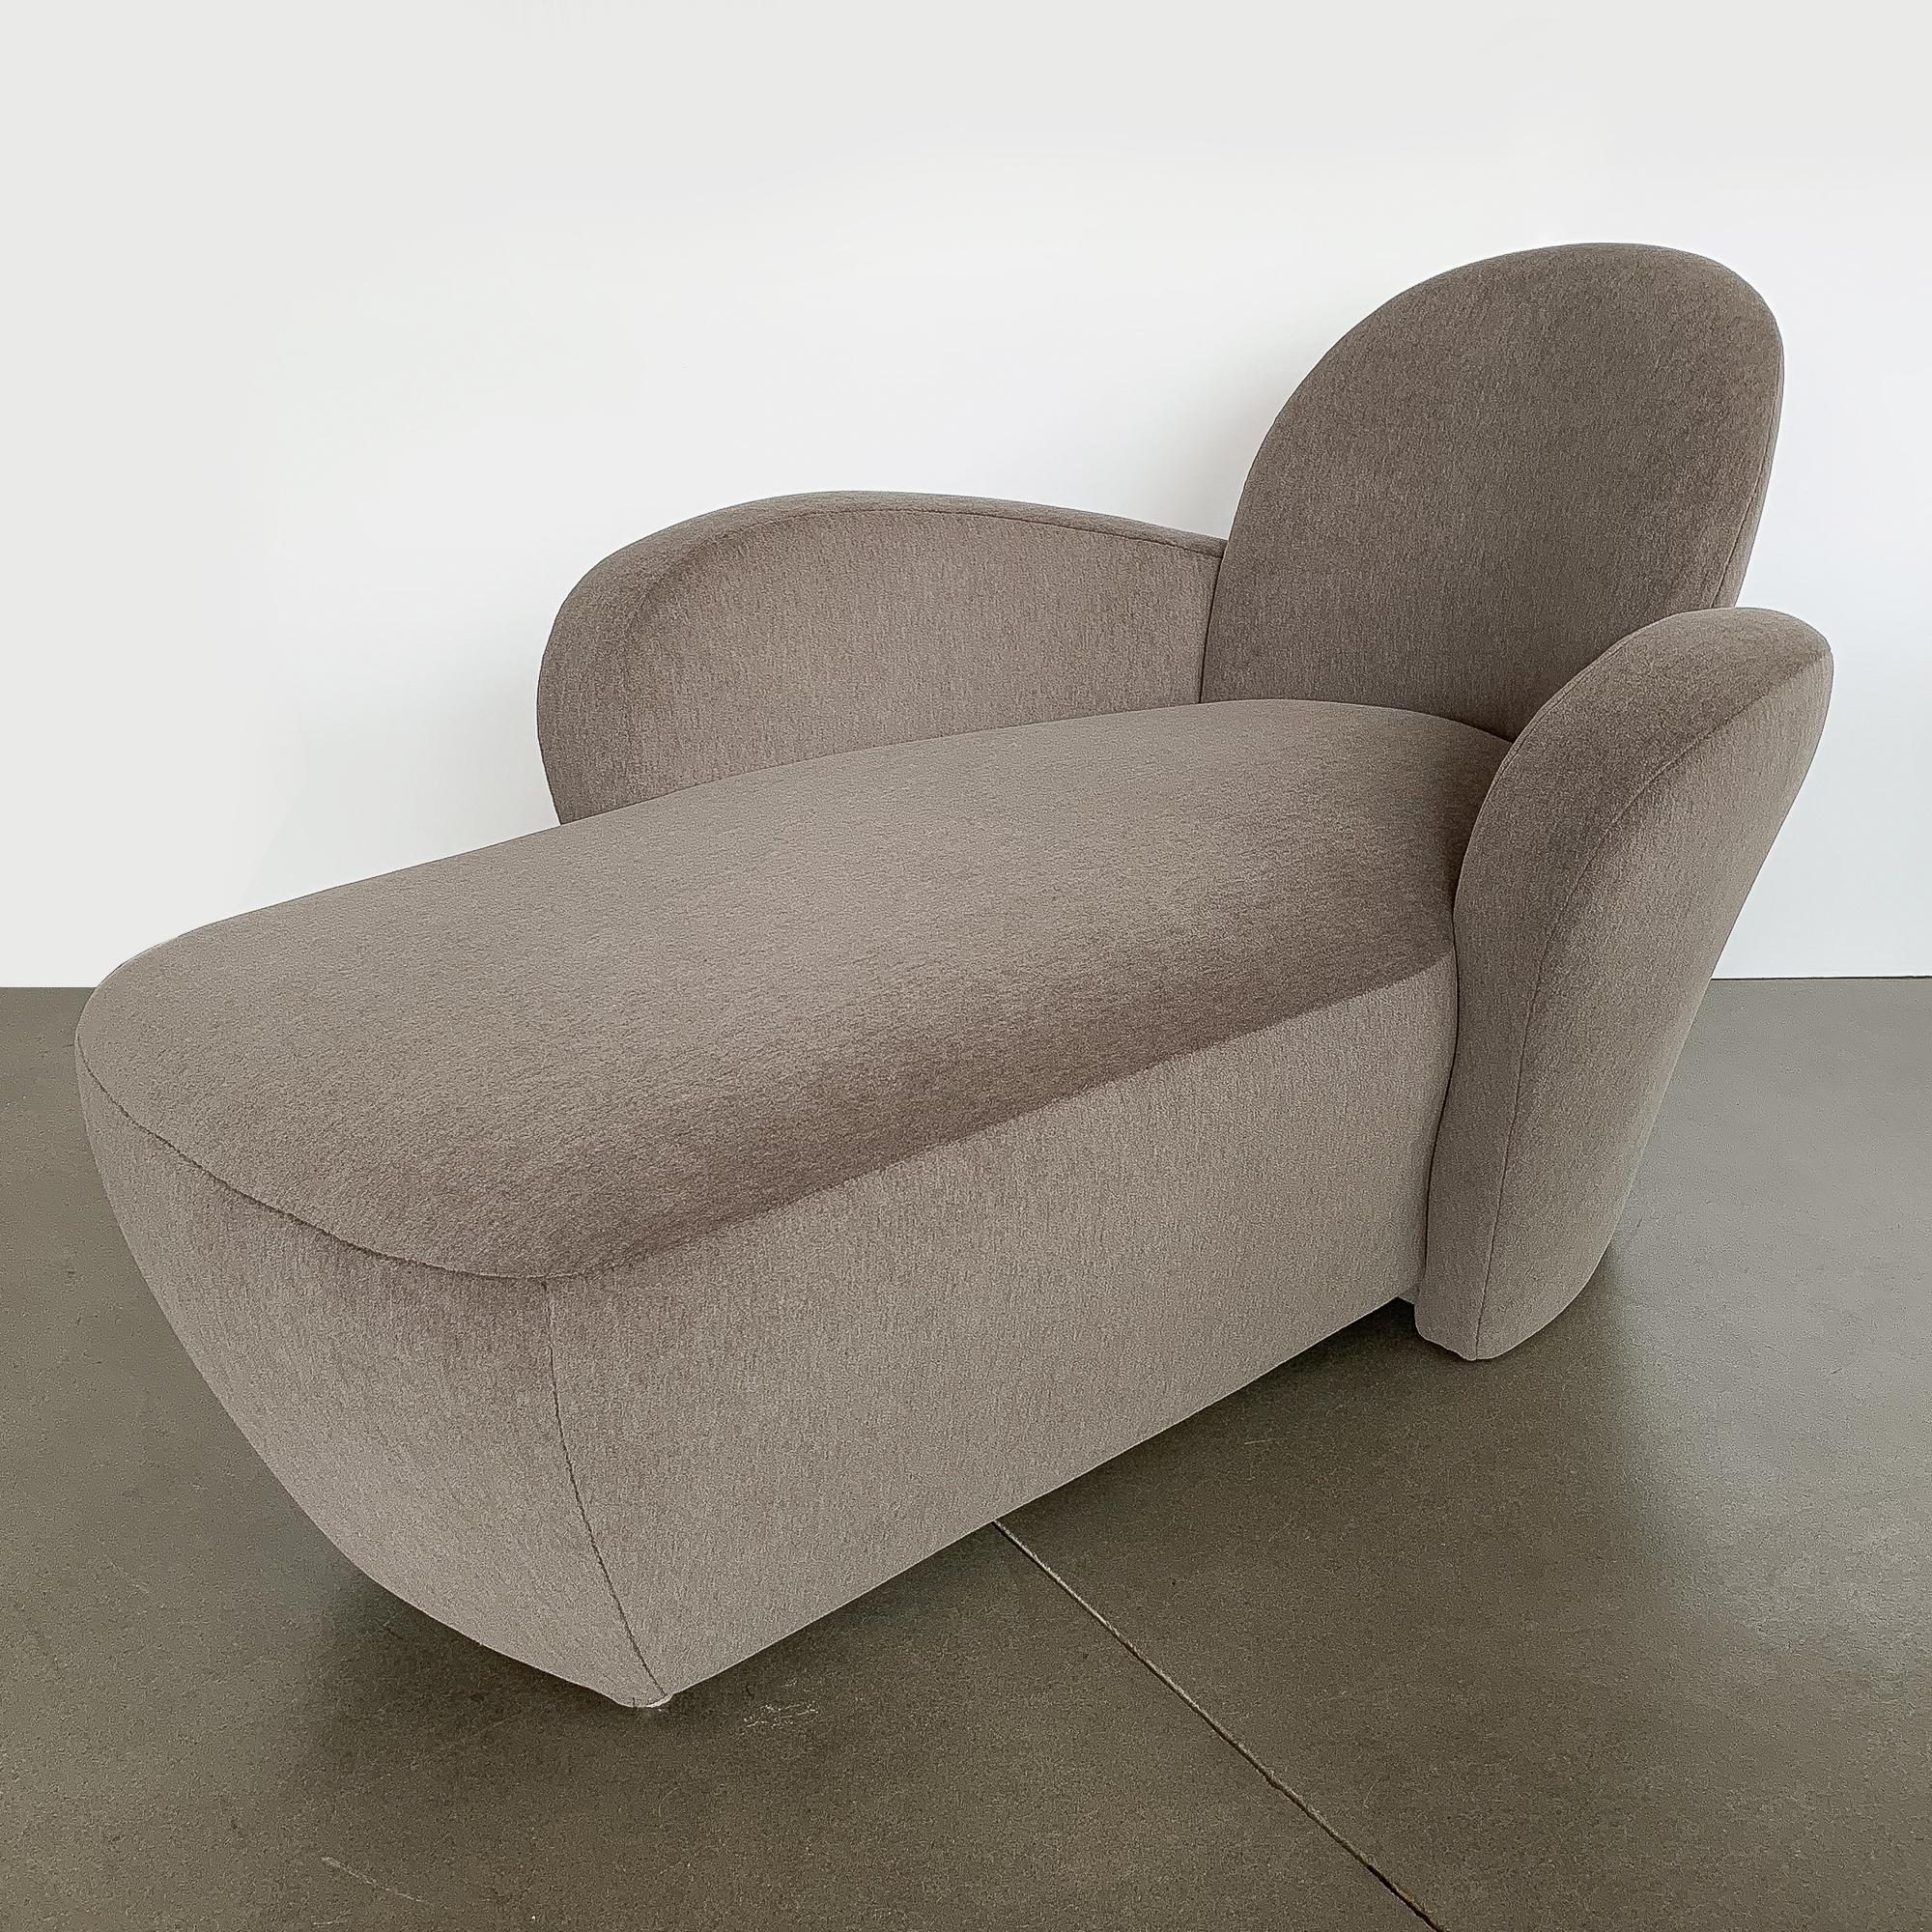 A custom fully upholstered 